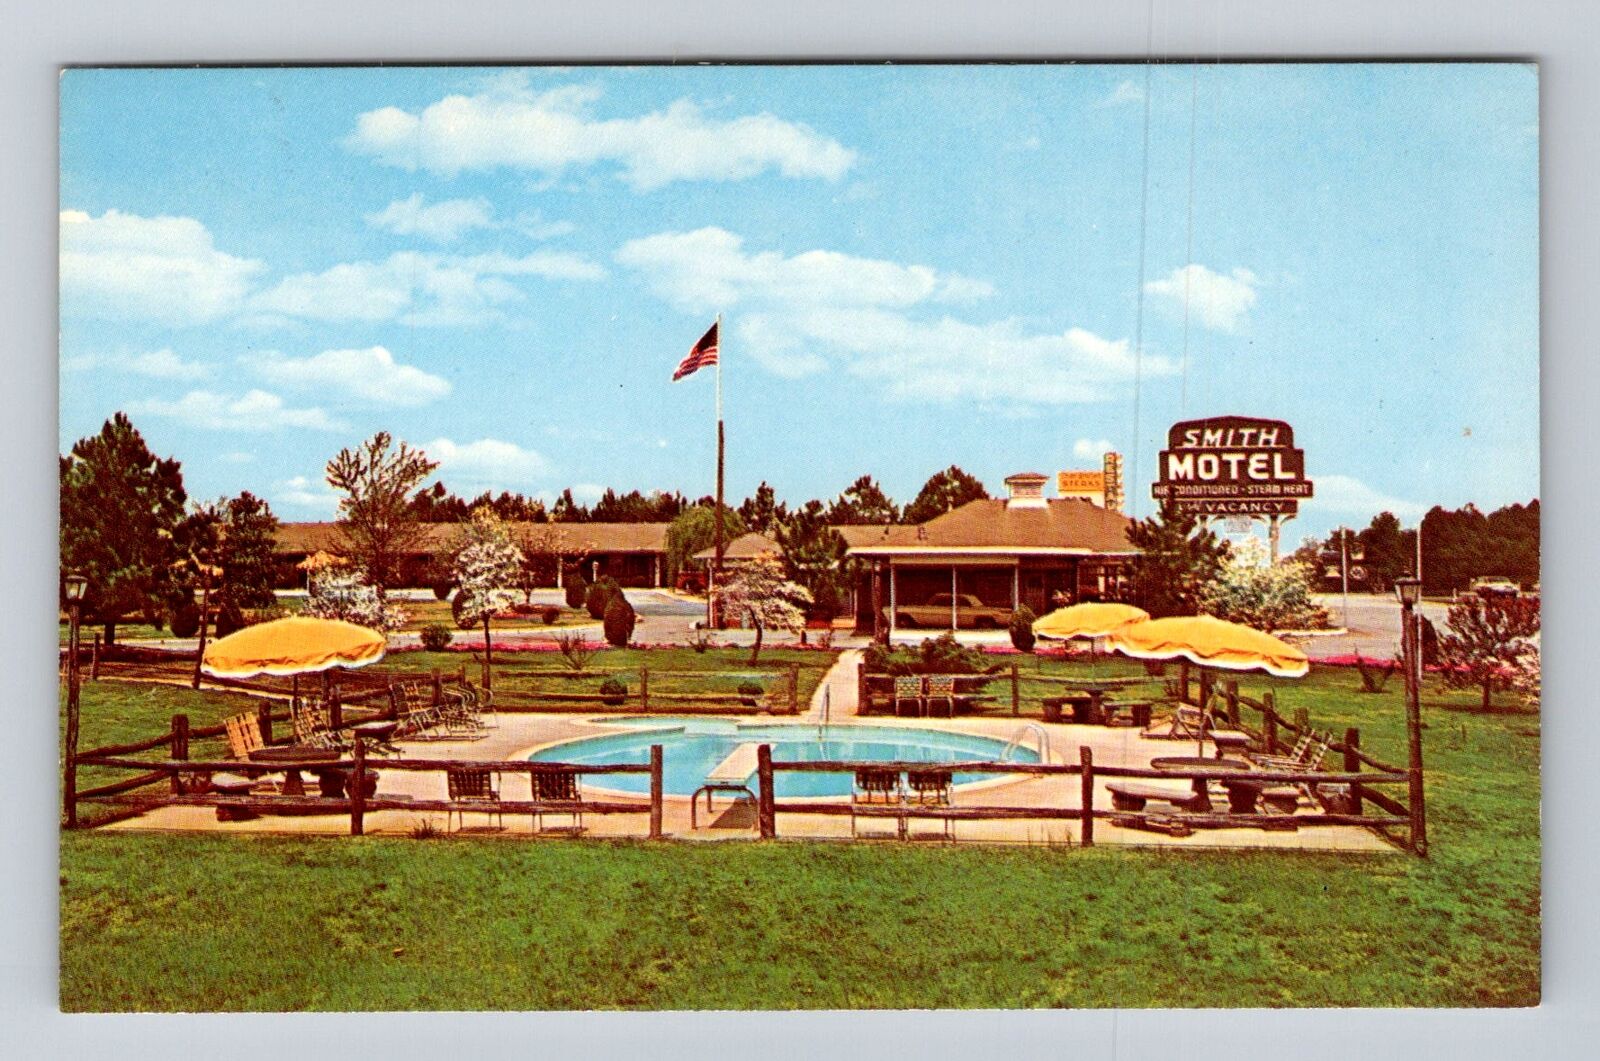 Kennesaw GA-Georgia, Smith Motel Advertising Vintage Souvenir Postcard